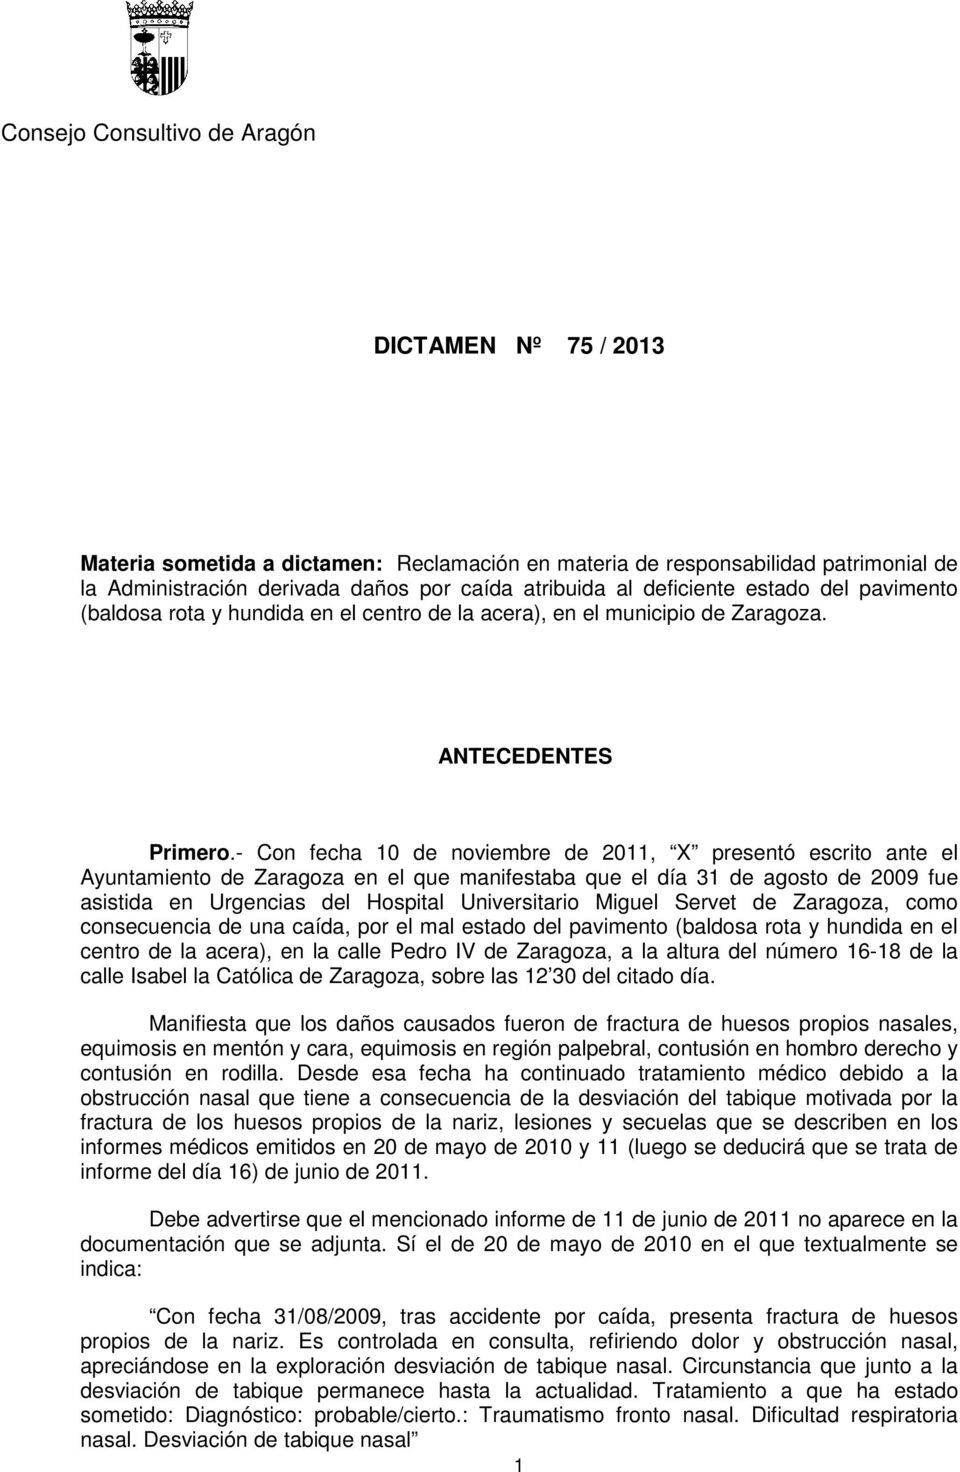 - Con fecha 10 de noviembre de 2011, X presentó escrito ante el Ayuntamiento de Zaragoza en el que manifestaba que el día 31 de agosto de 2009 fue asistida en Urgencias del Hospital Universitario